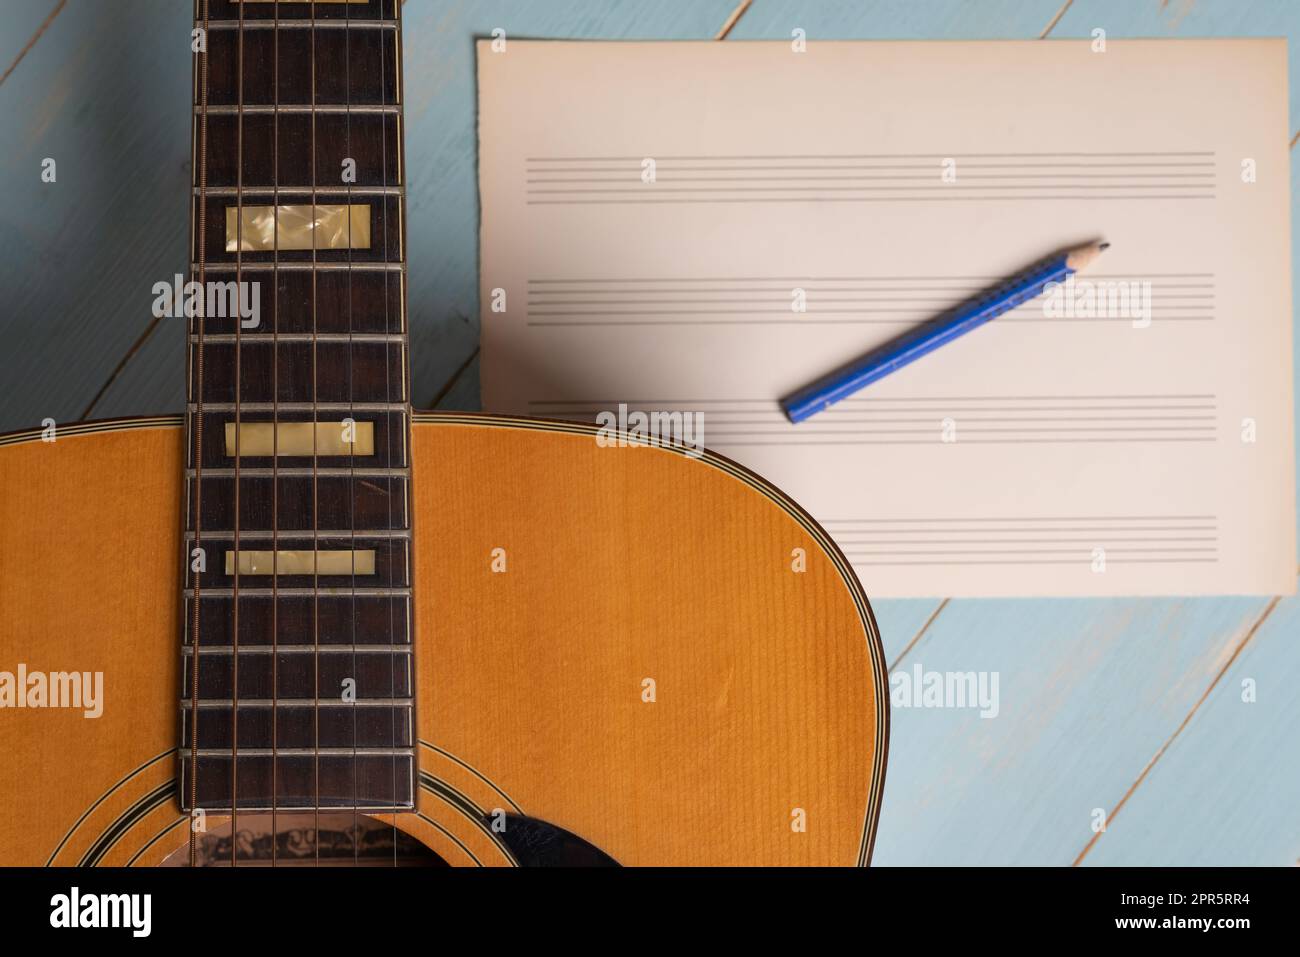 Scena di registrazione musicale con chitarra, foglio di musica vuoto e matita su tavolo di legno Foto Stock